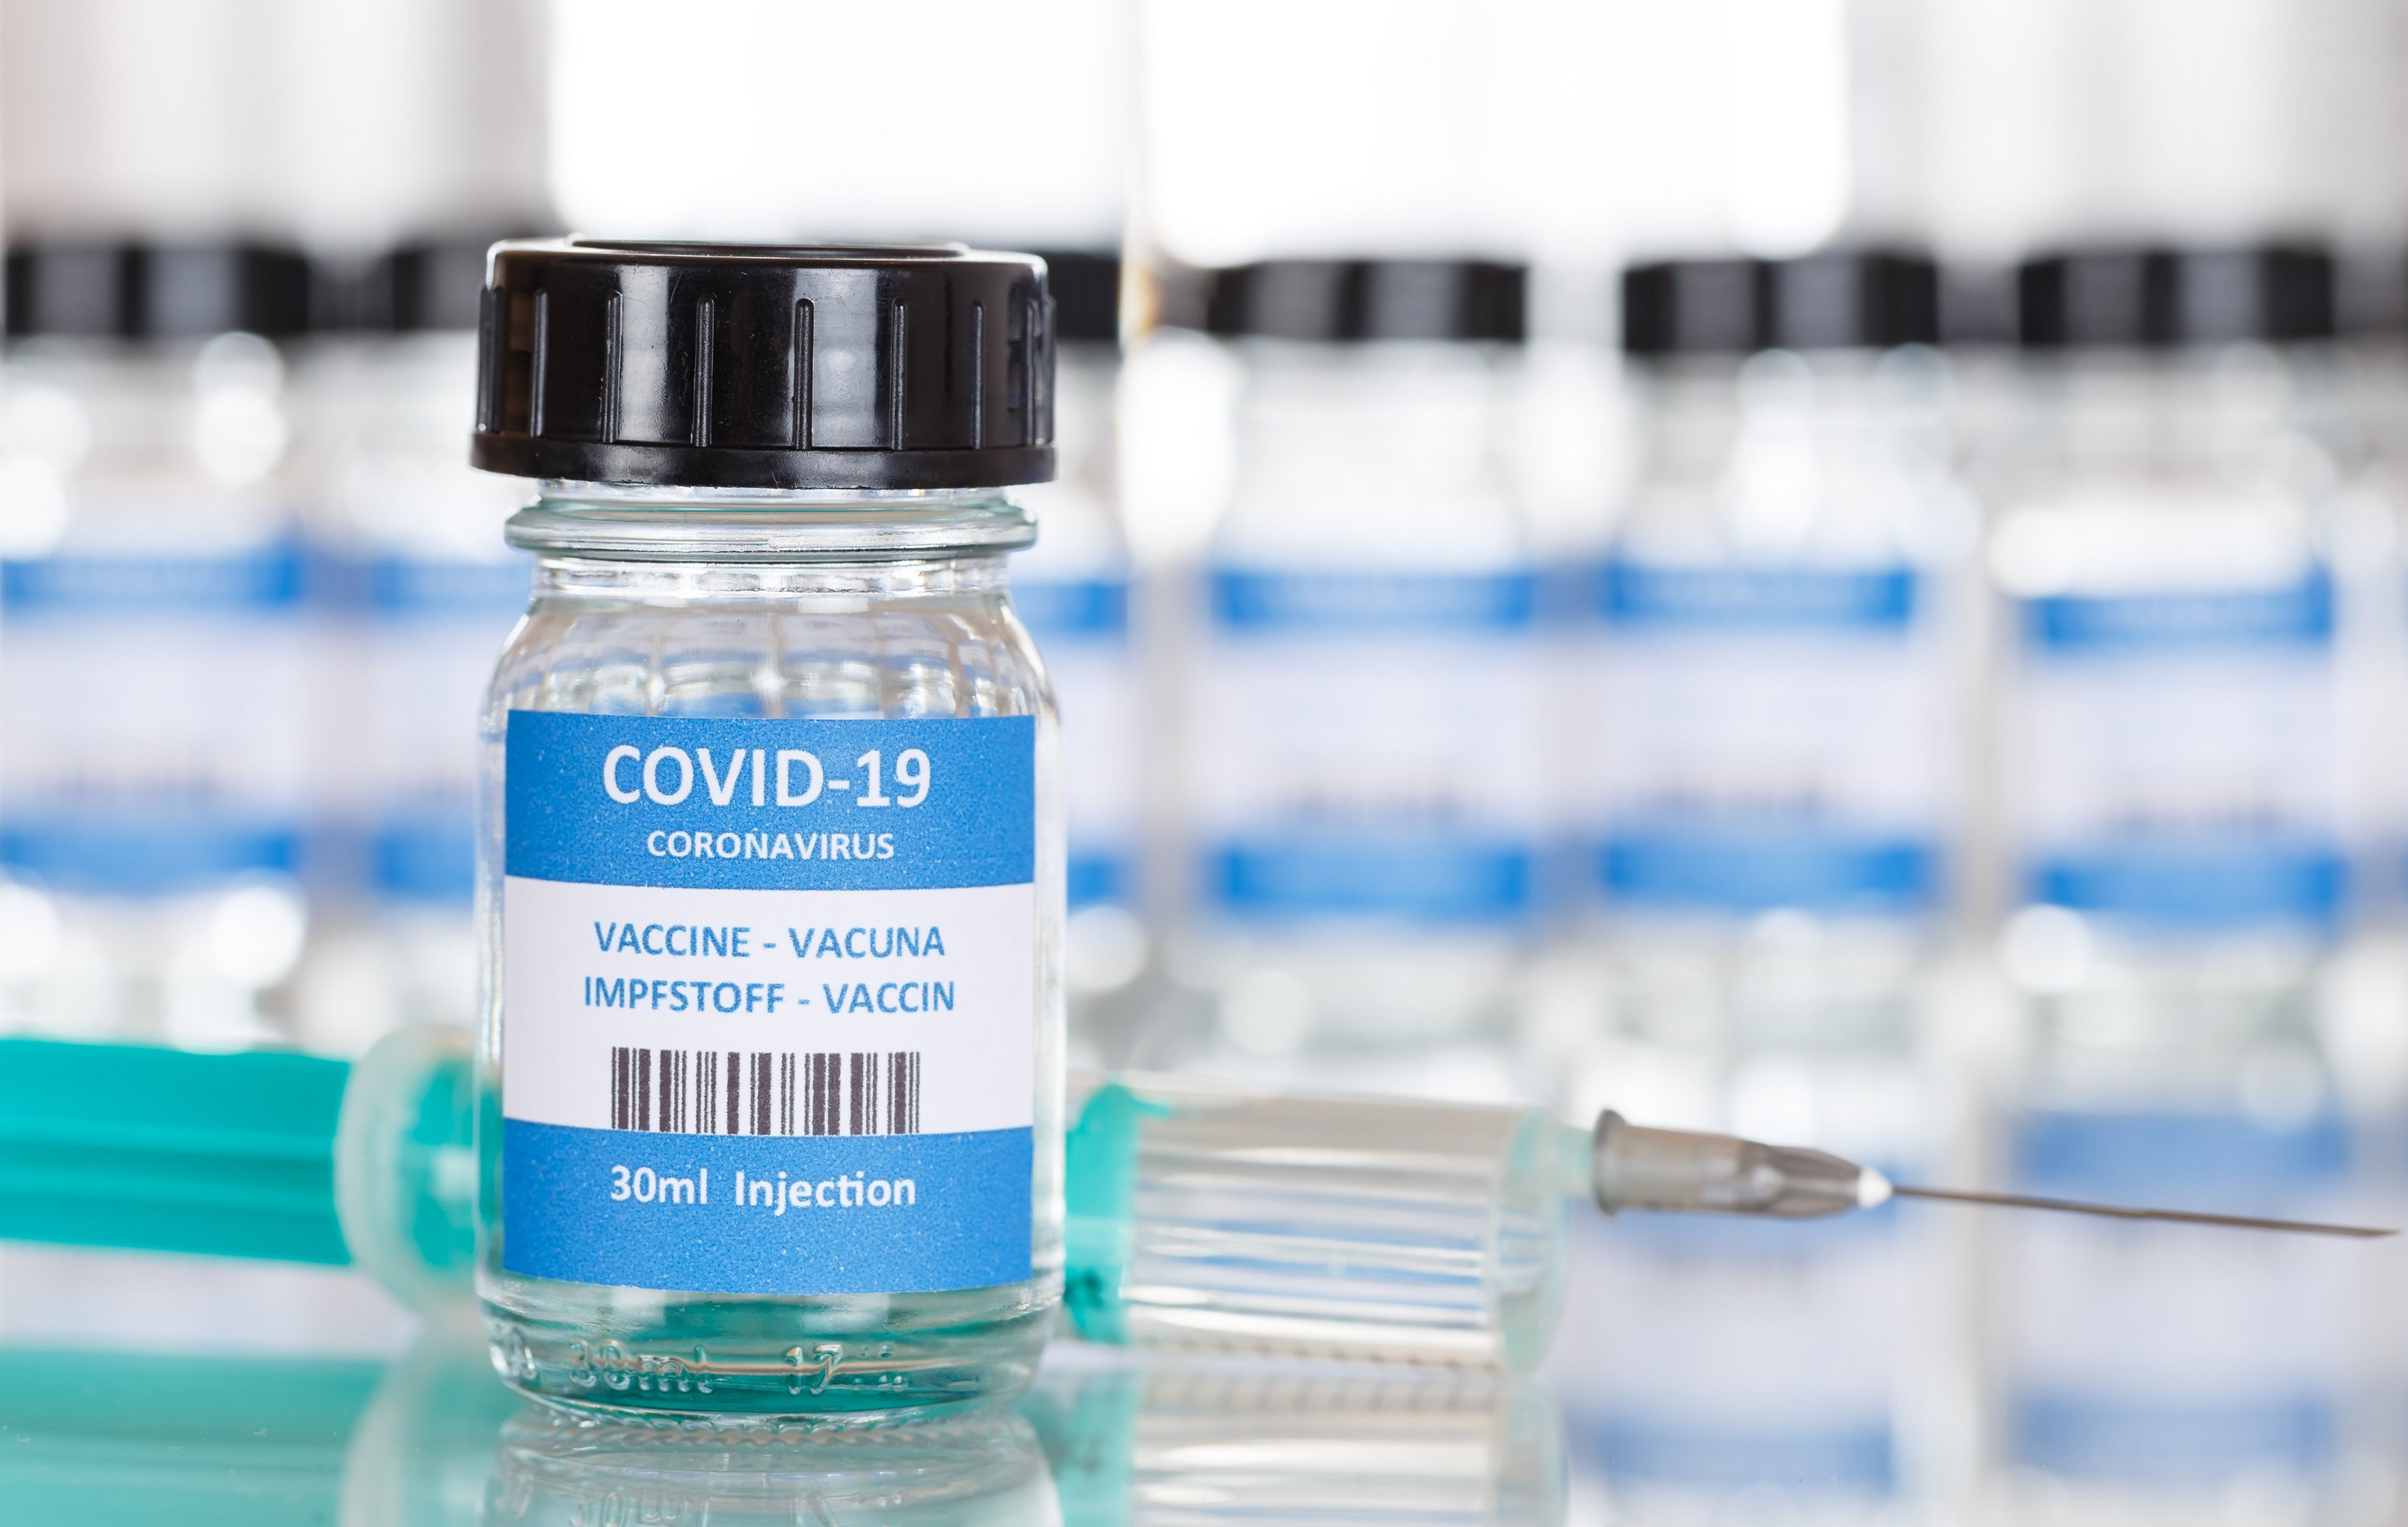 Impfstoff für die COVID-19-Impfung, Copyright: Adobe Stock / Markus Mainka